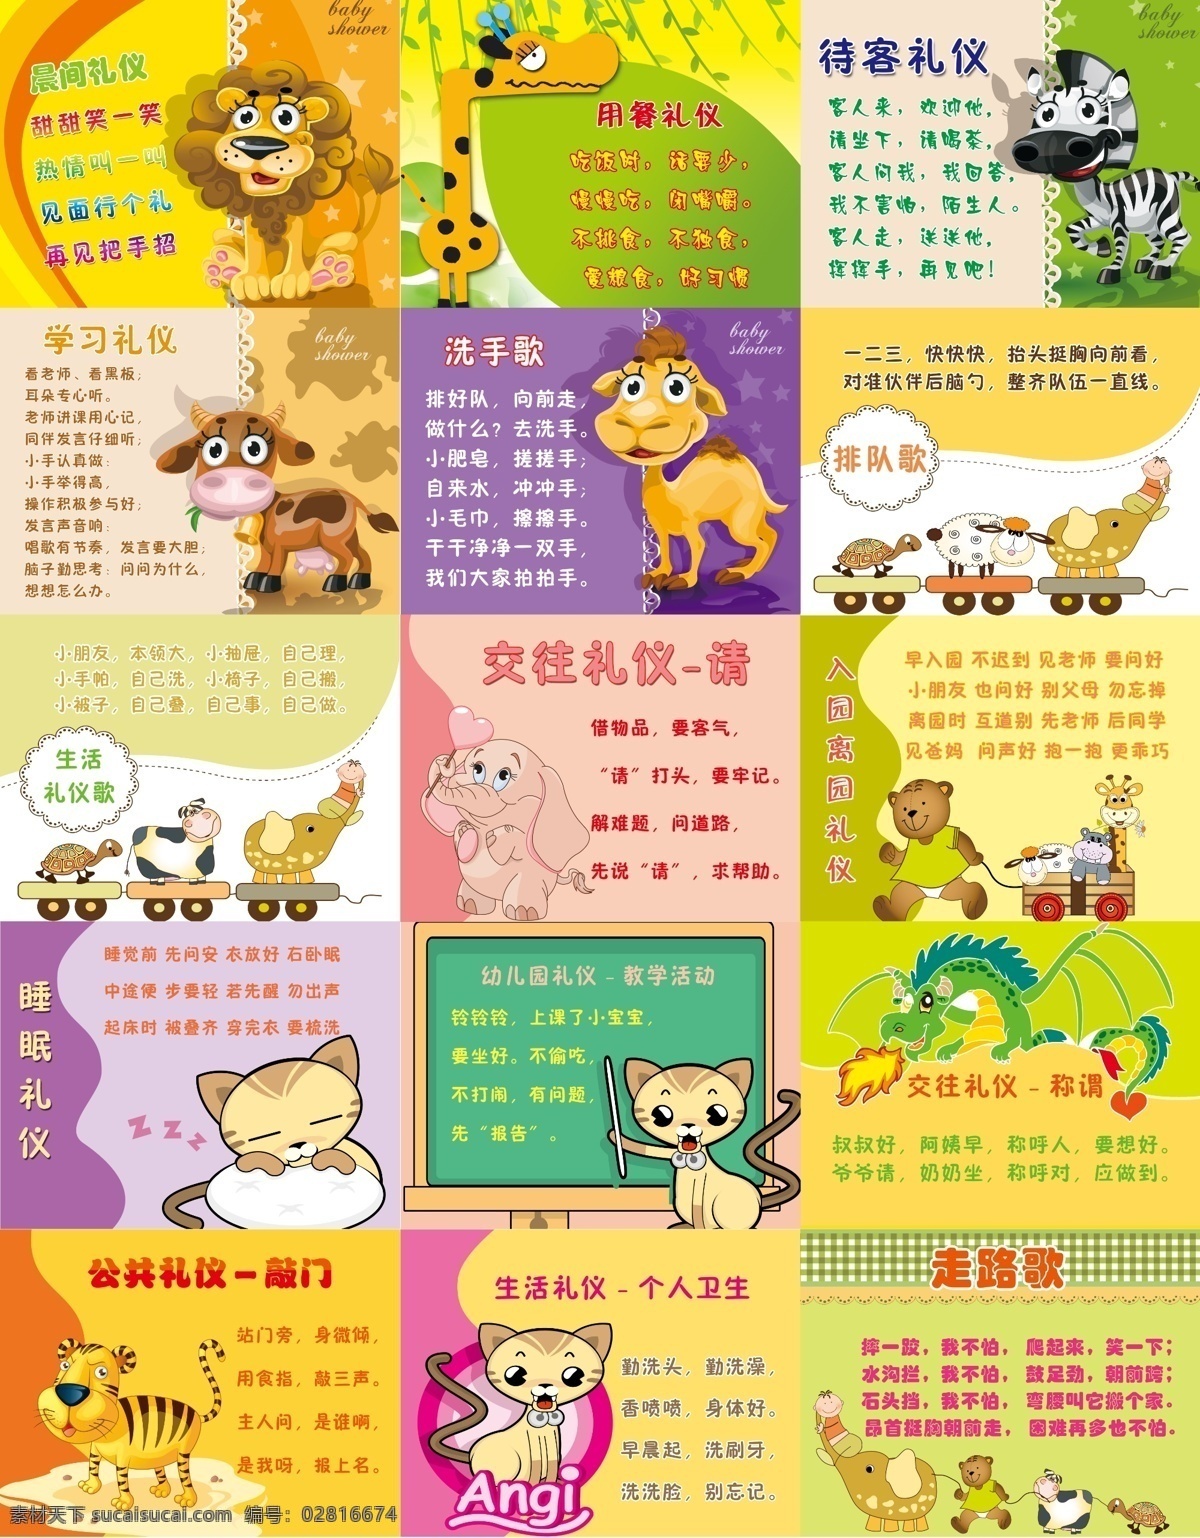 幼儿园礼仪 幼儿园 礼仪 可爱小动物 狮子 幼儿园海报 马 大象 老虎 广告设计模板 源文件